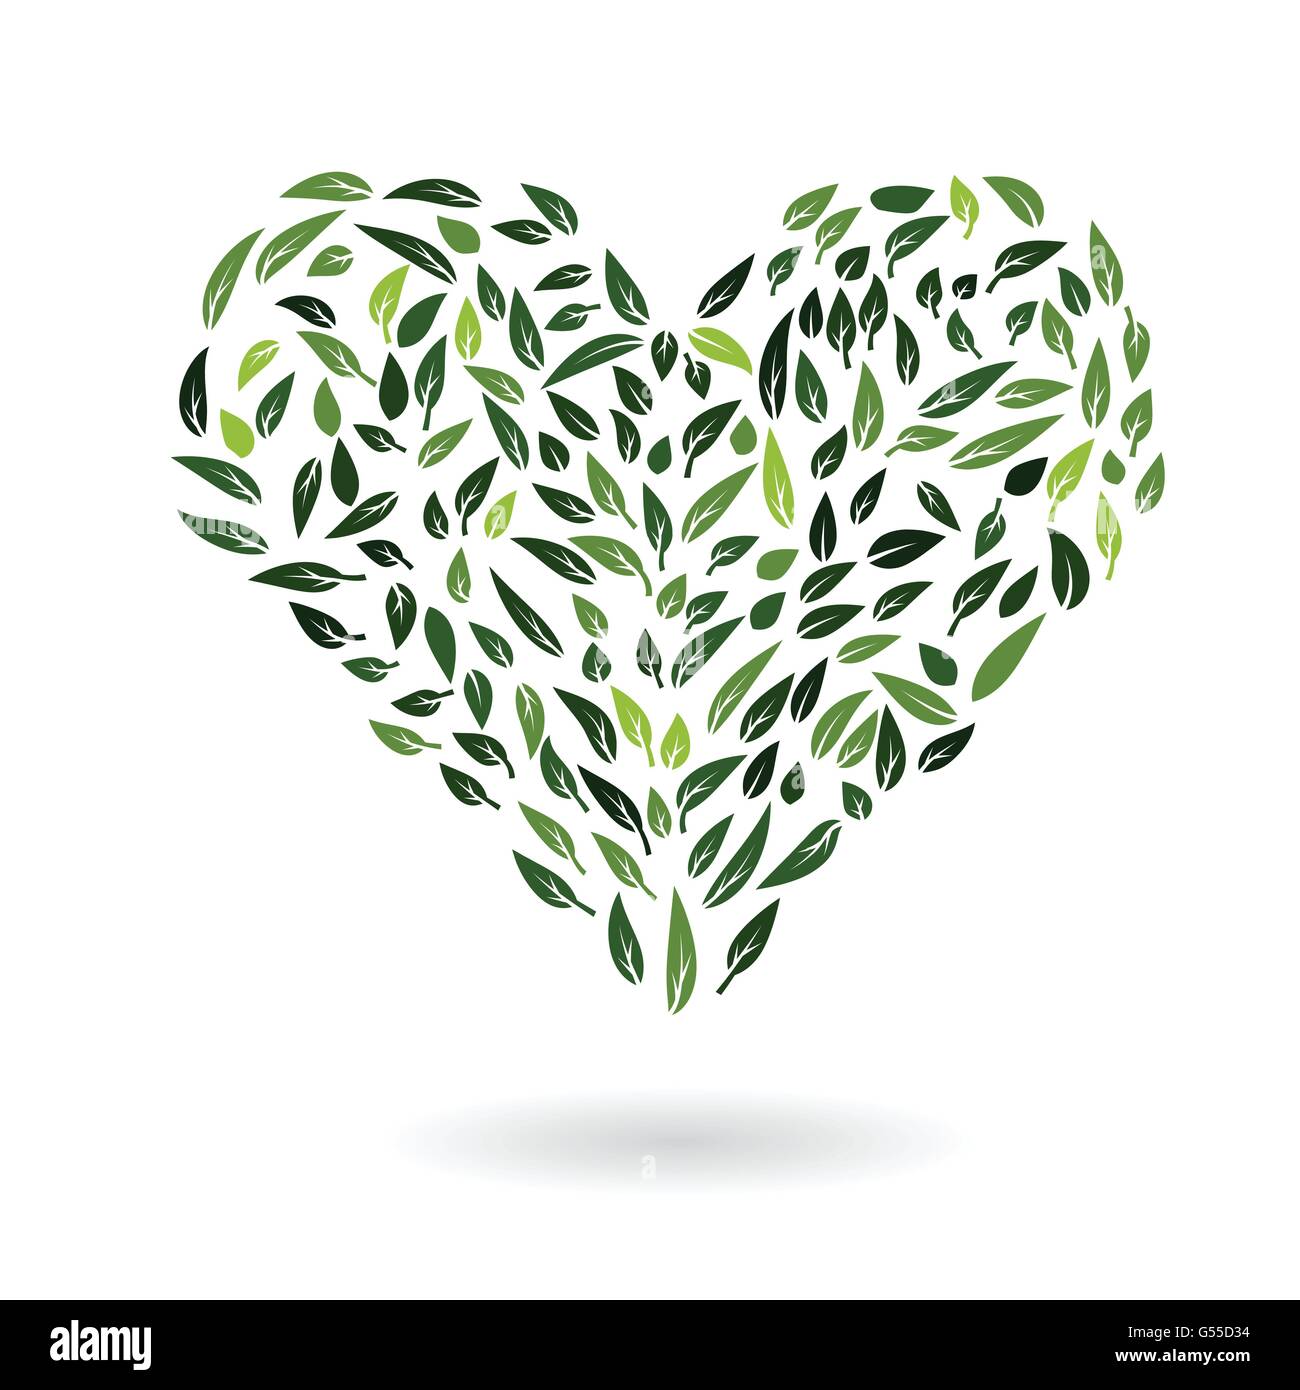 abstrakte Herzsymbol von Grün lässt Umwelt-Schutz-Eco-Konzept-Vektor-illustration Stock Vektor